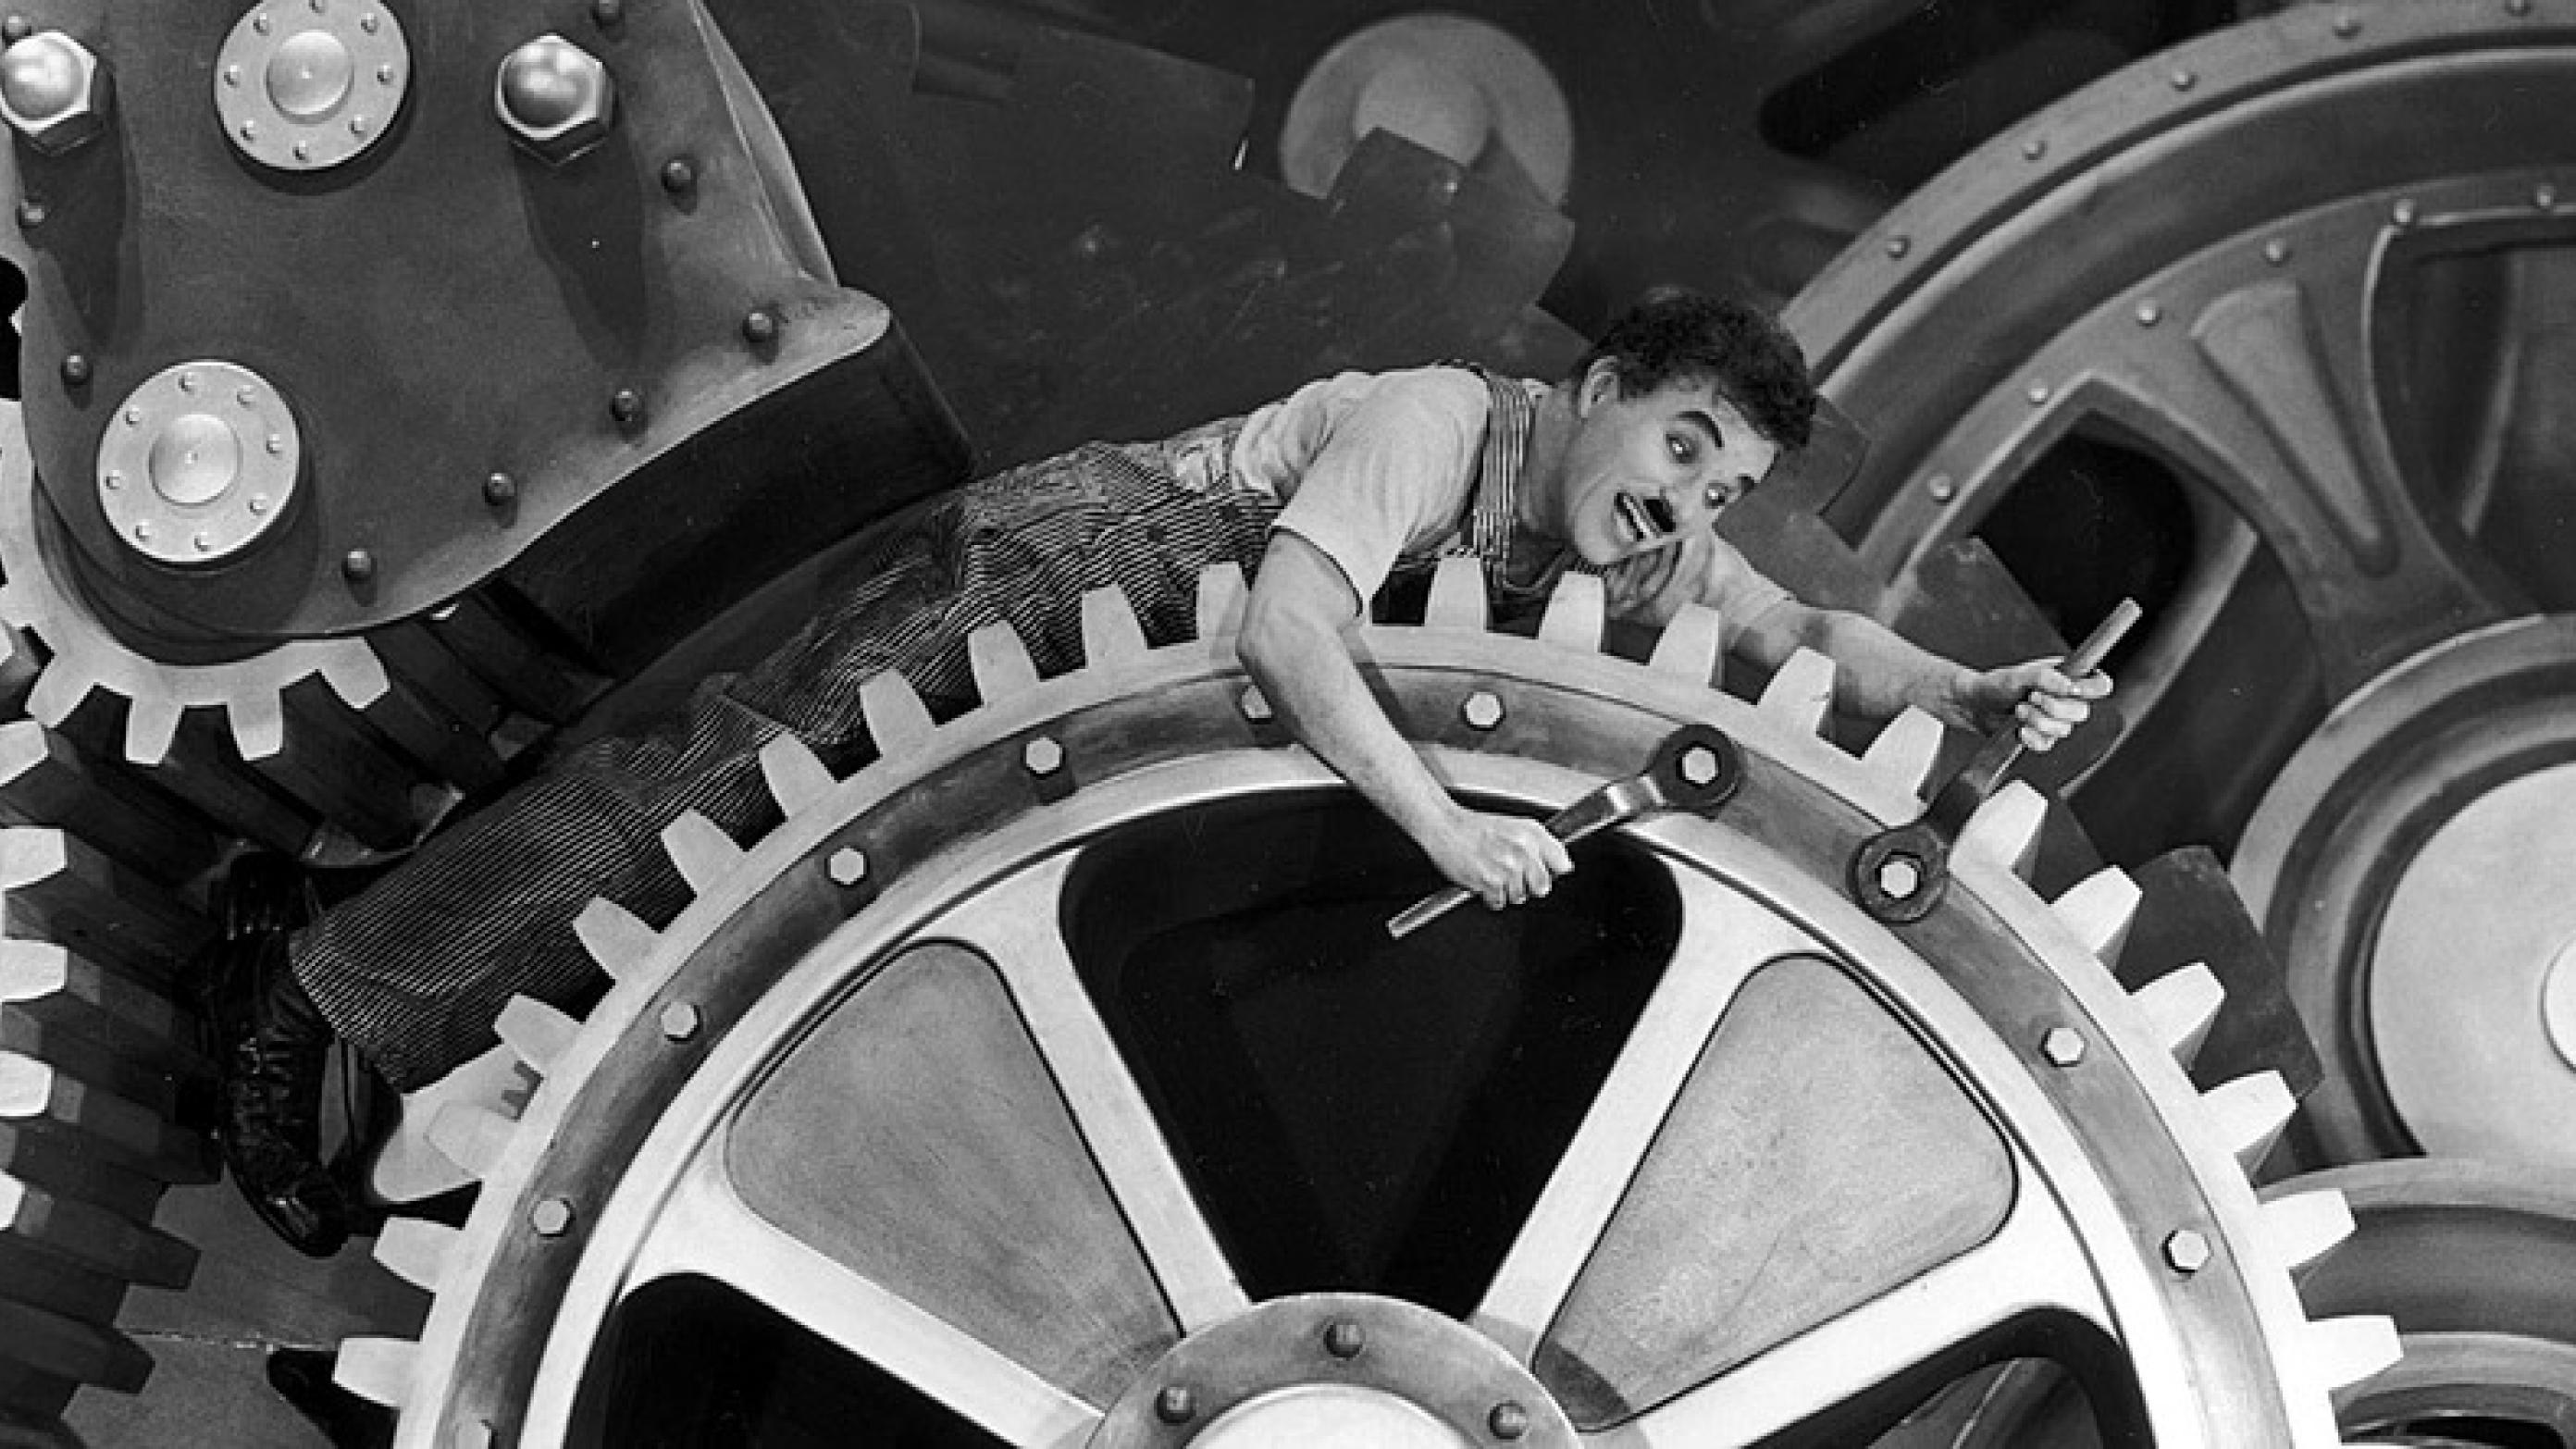 Charlie Chaplin bogstaveligt fanget i maskineriet i filmen "Moderne Tider" fra 1936. (c) Public Domain.